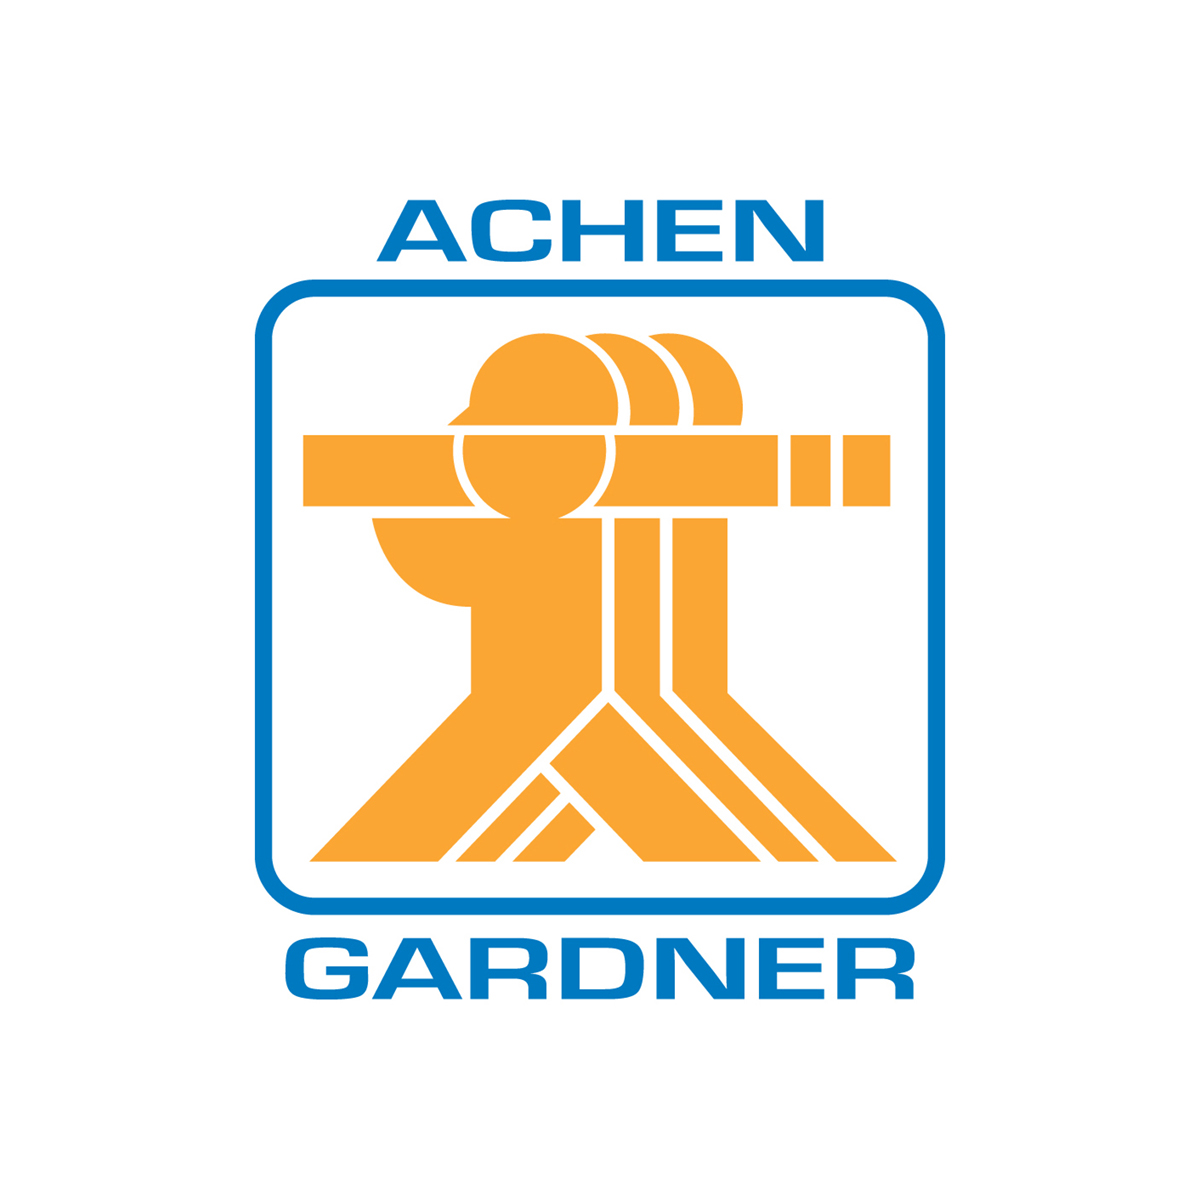 Achen-Gardner logo.jpg